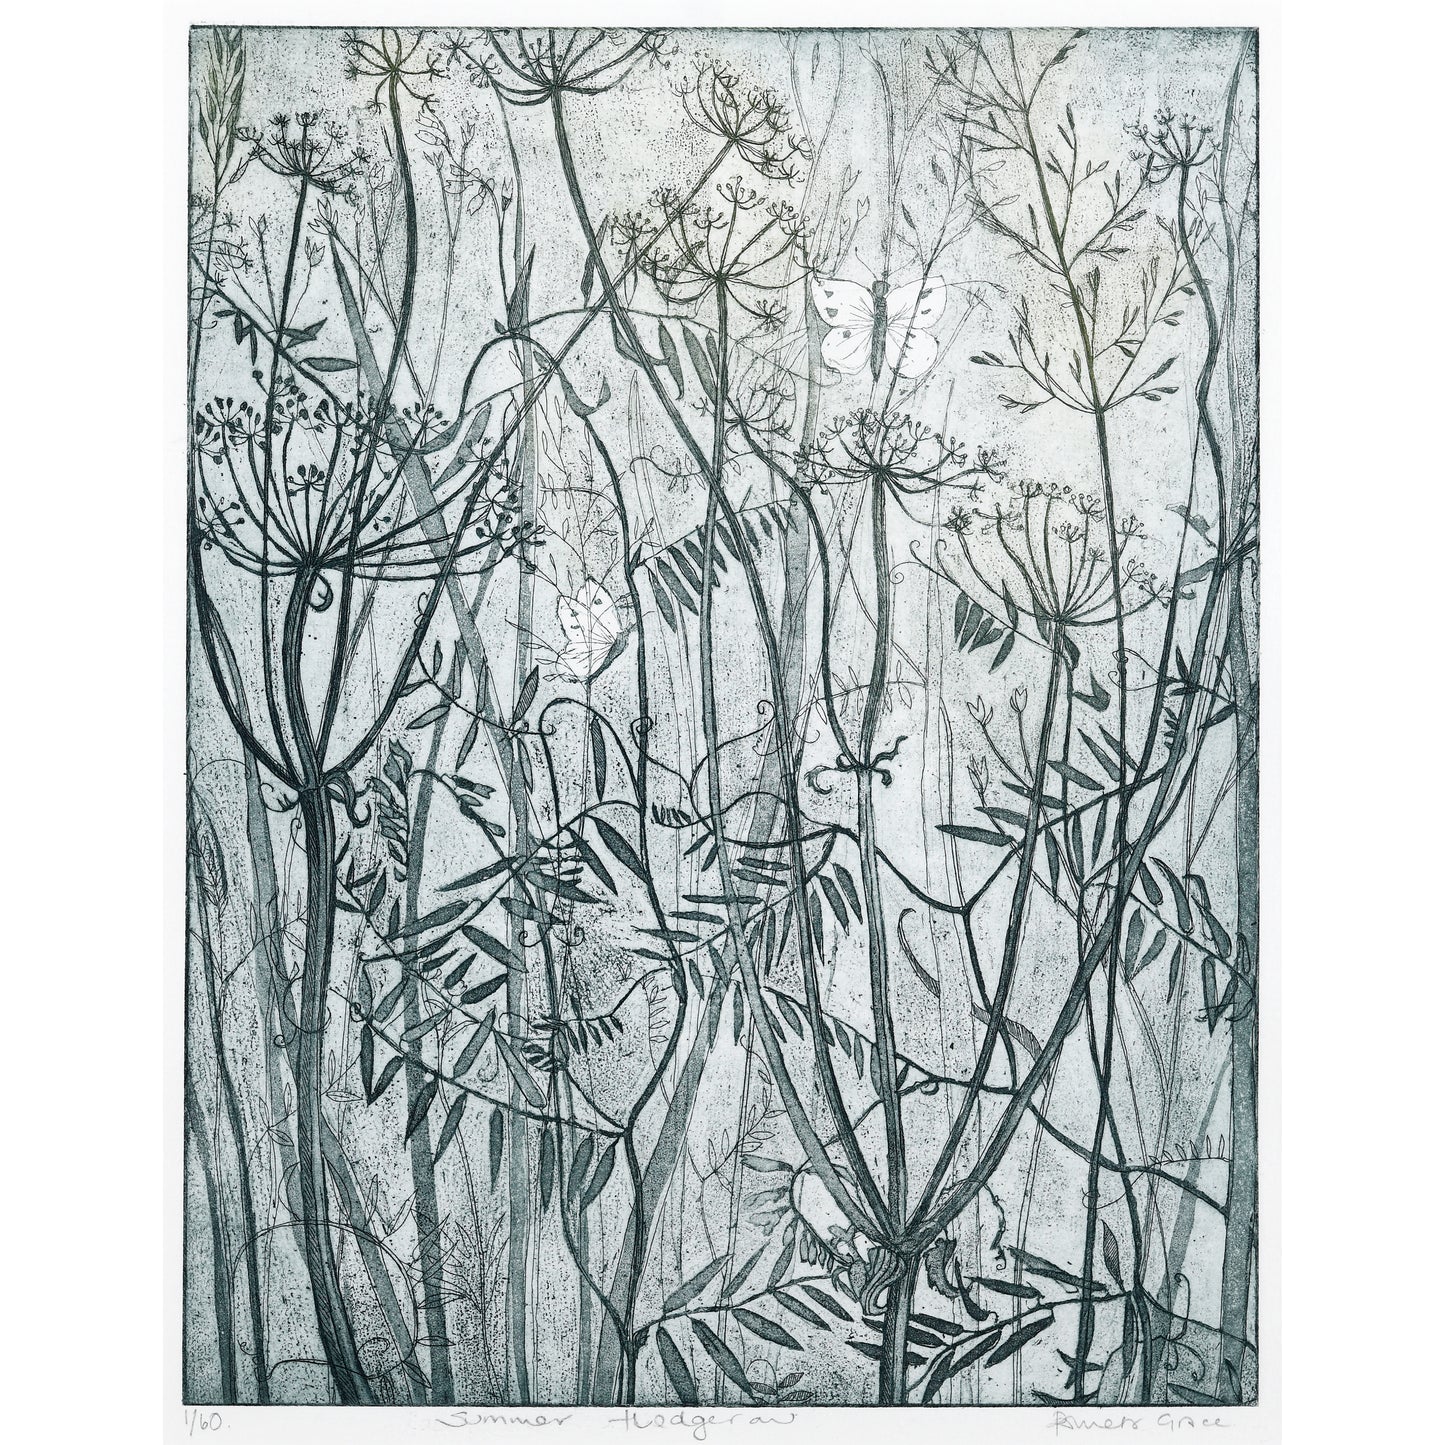 Framed print "Summer Hedgerow"